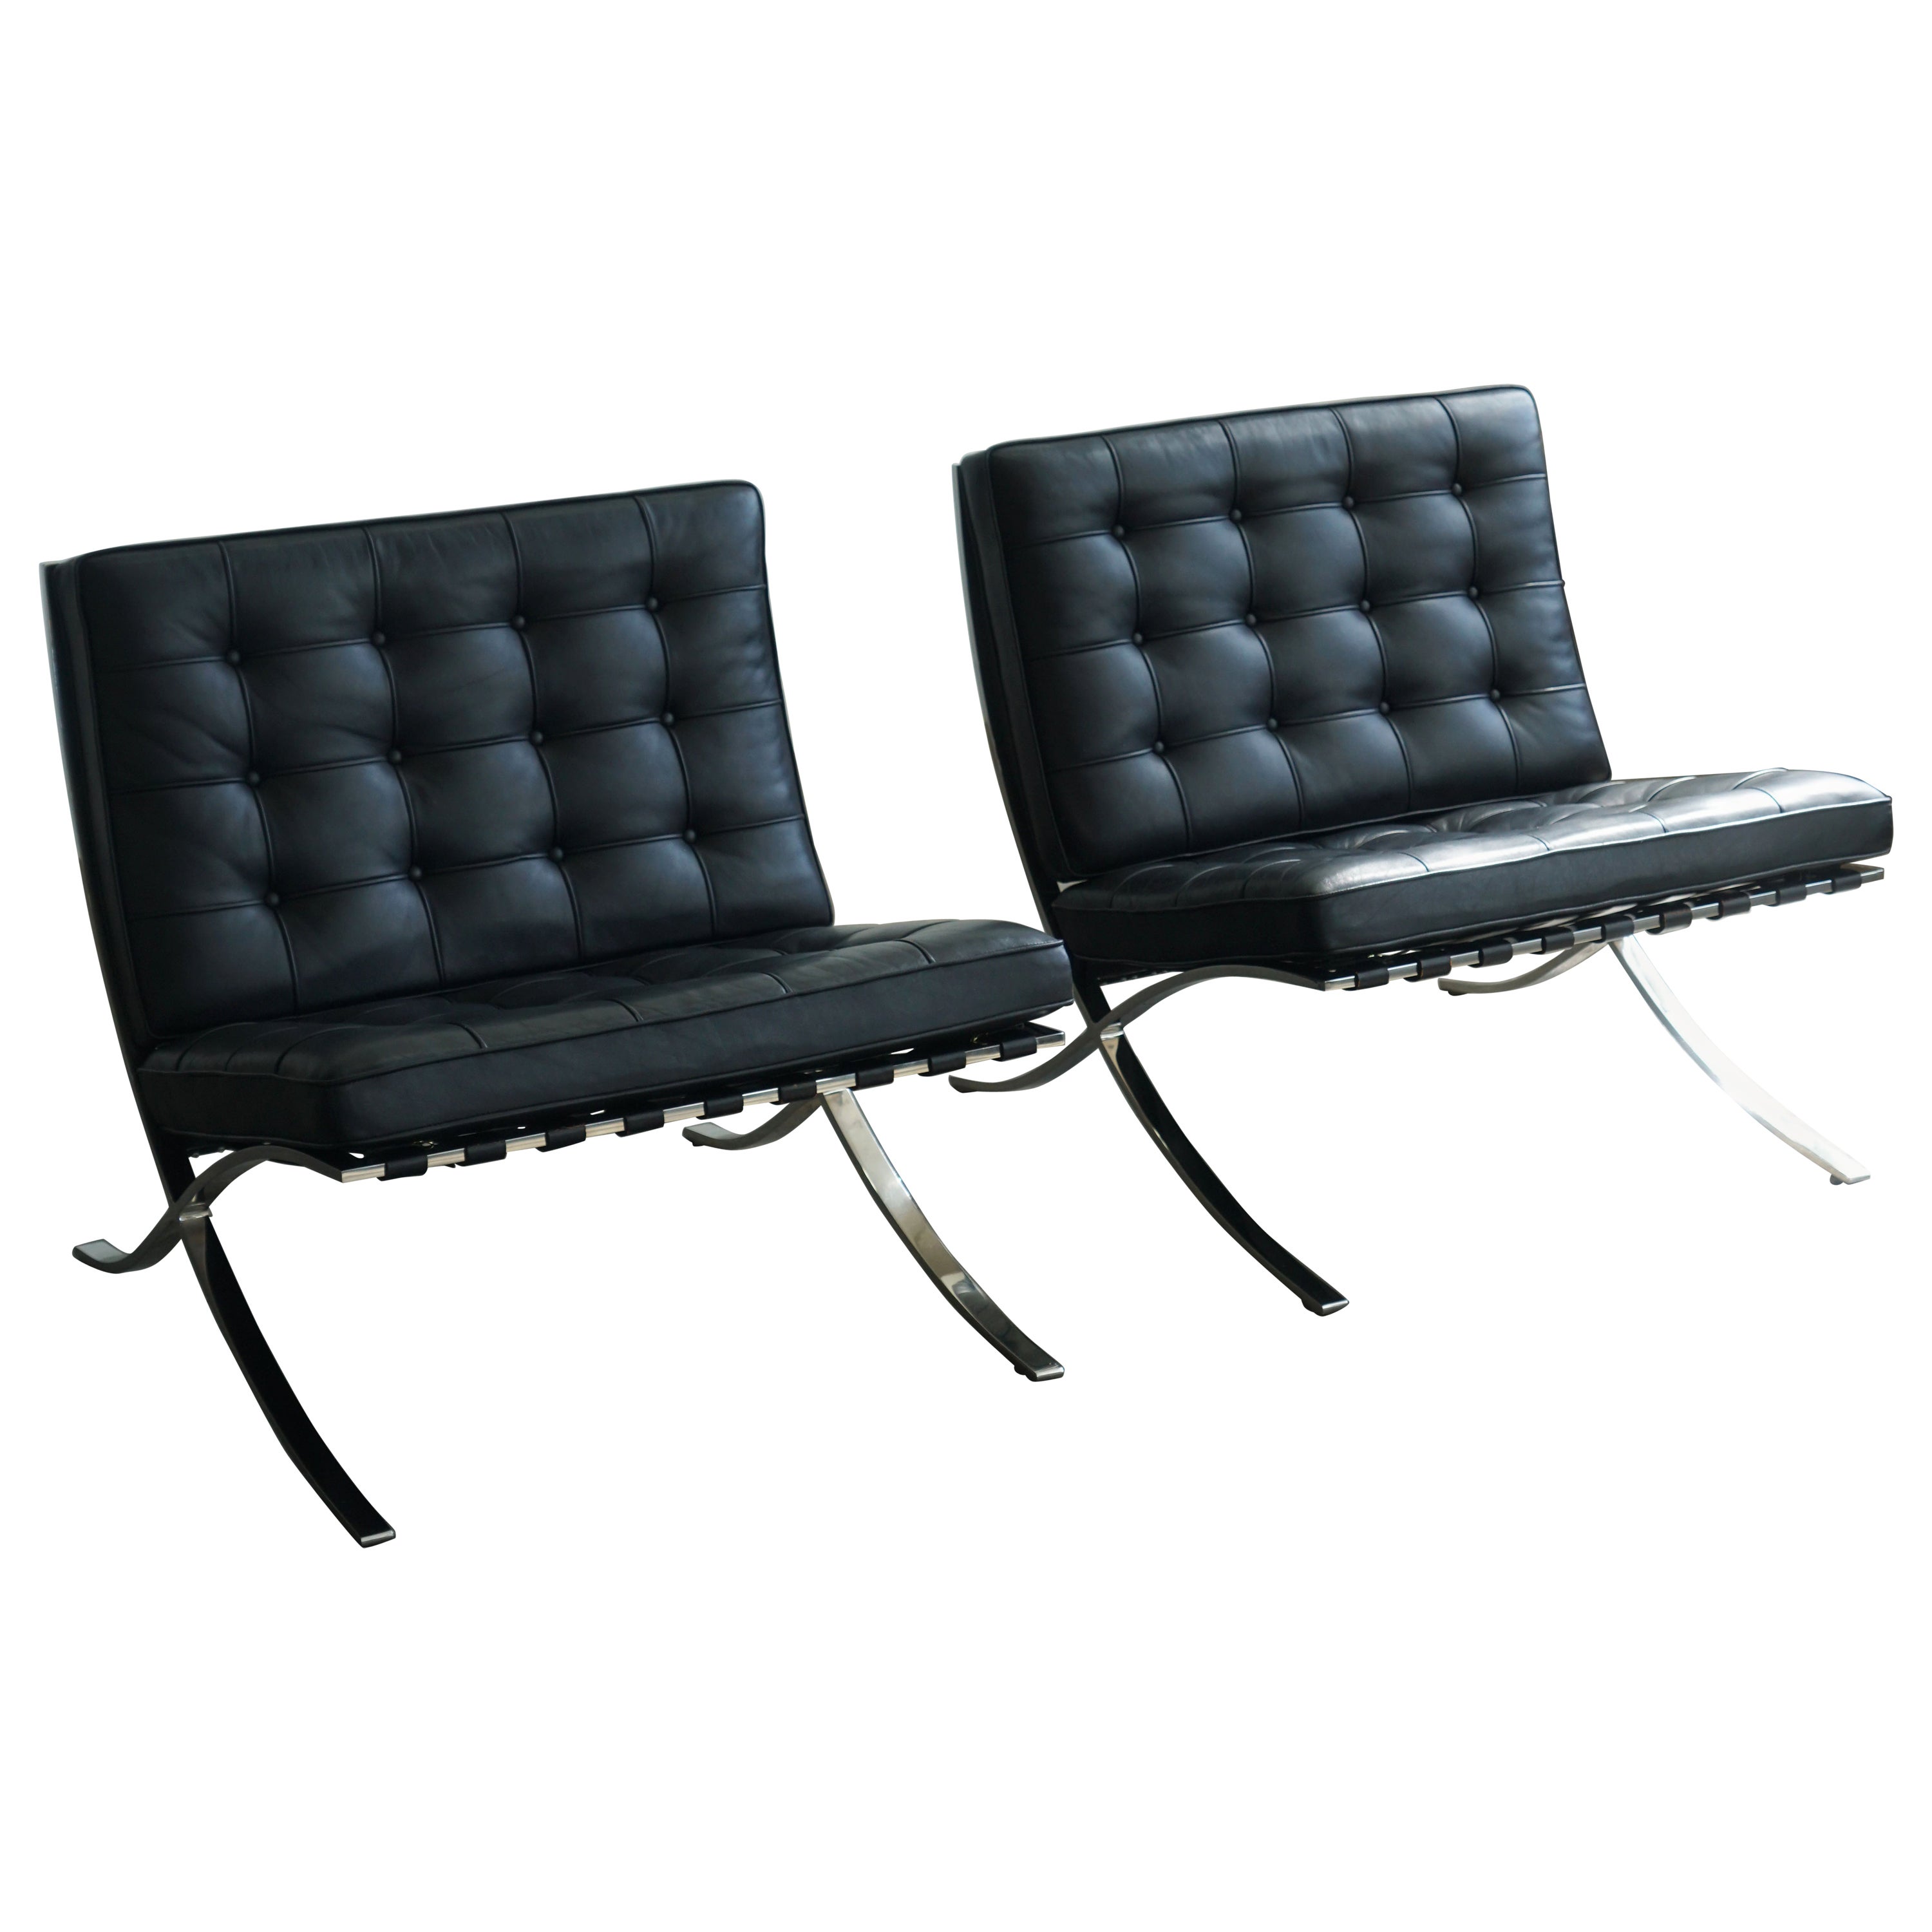 Chaises longues Knoll Barcelona par Mies van der Rohe, cuir noir 